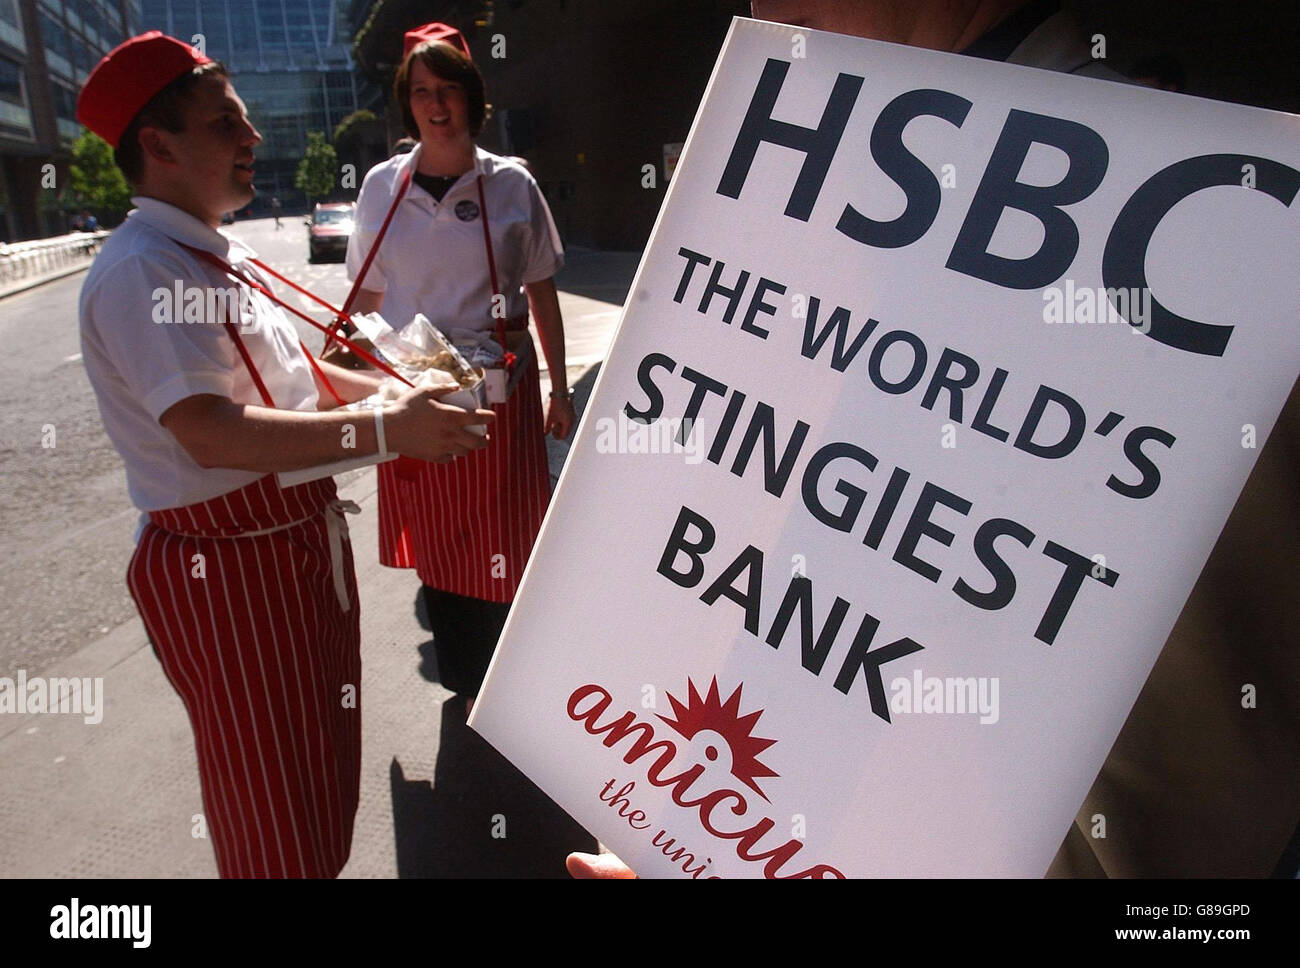 AMICUS-Mitglieder geben den Teilnehmern der HSBC-Hauptversammlung in London Erdnüsse aus, was darauf hindeutet, dass die Bank niedrige Löhne an die Mitarbeiter zahlt. Stockfoto